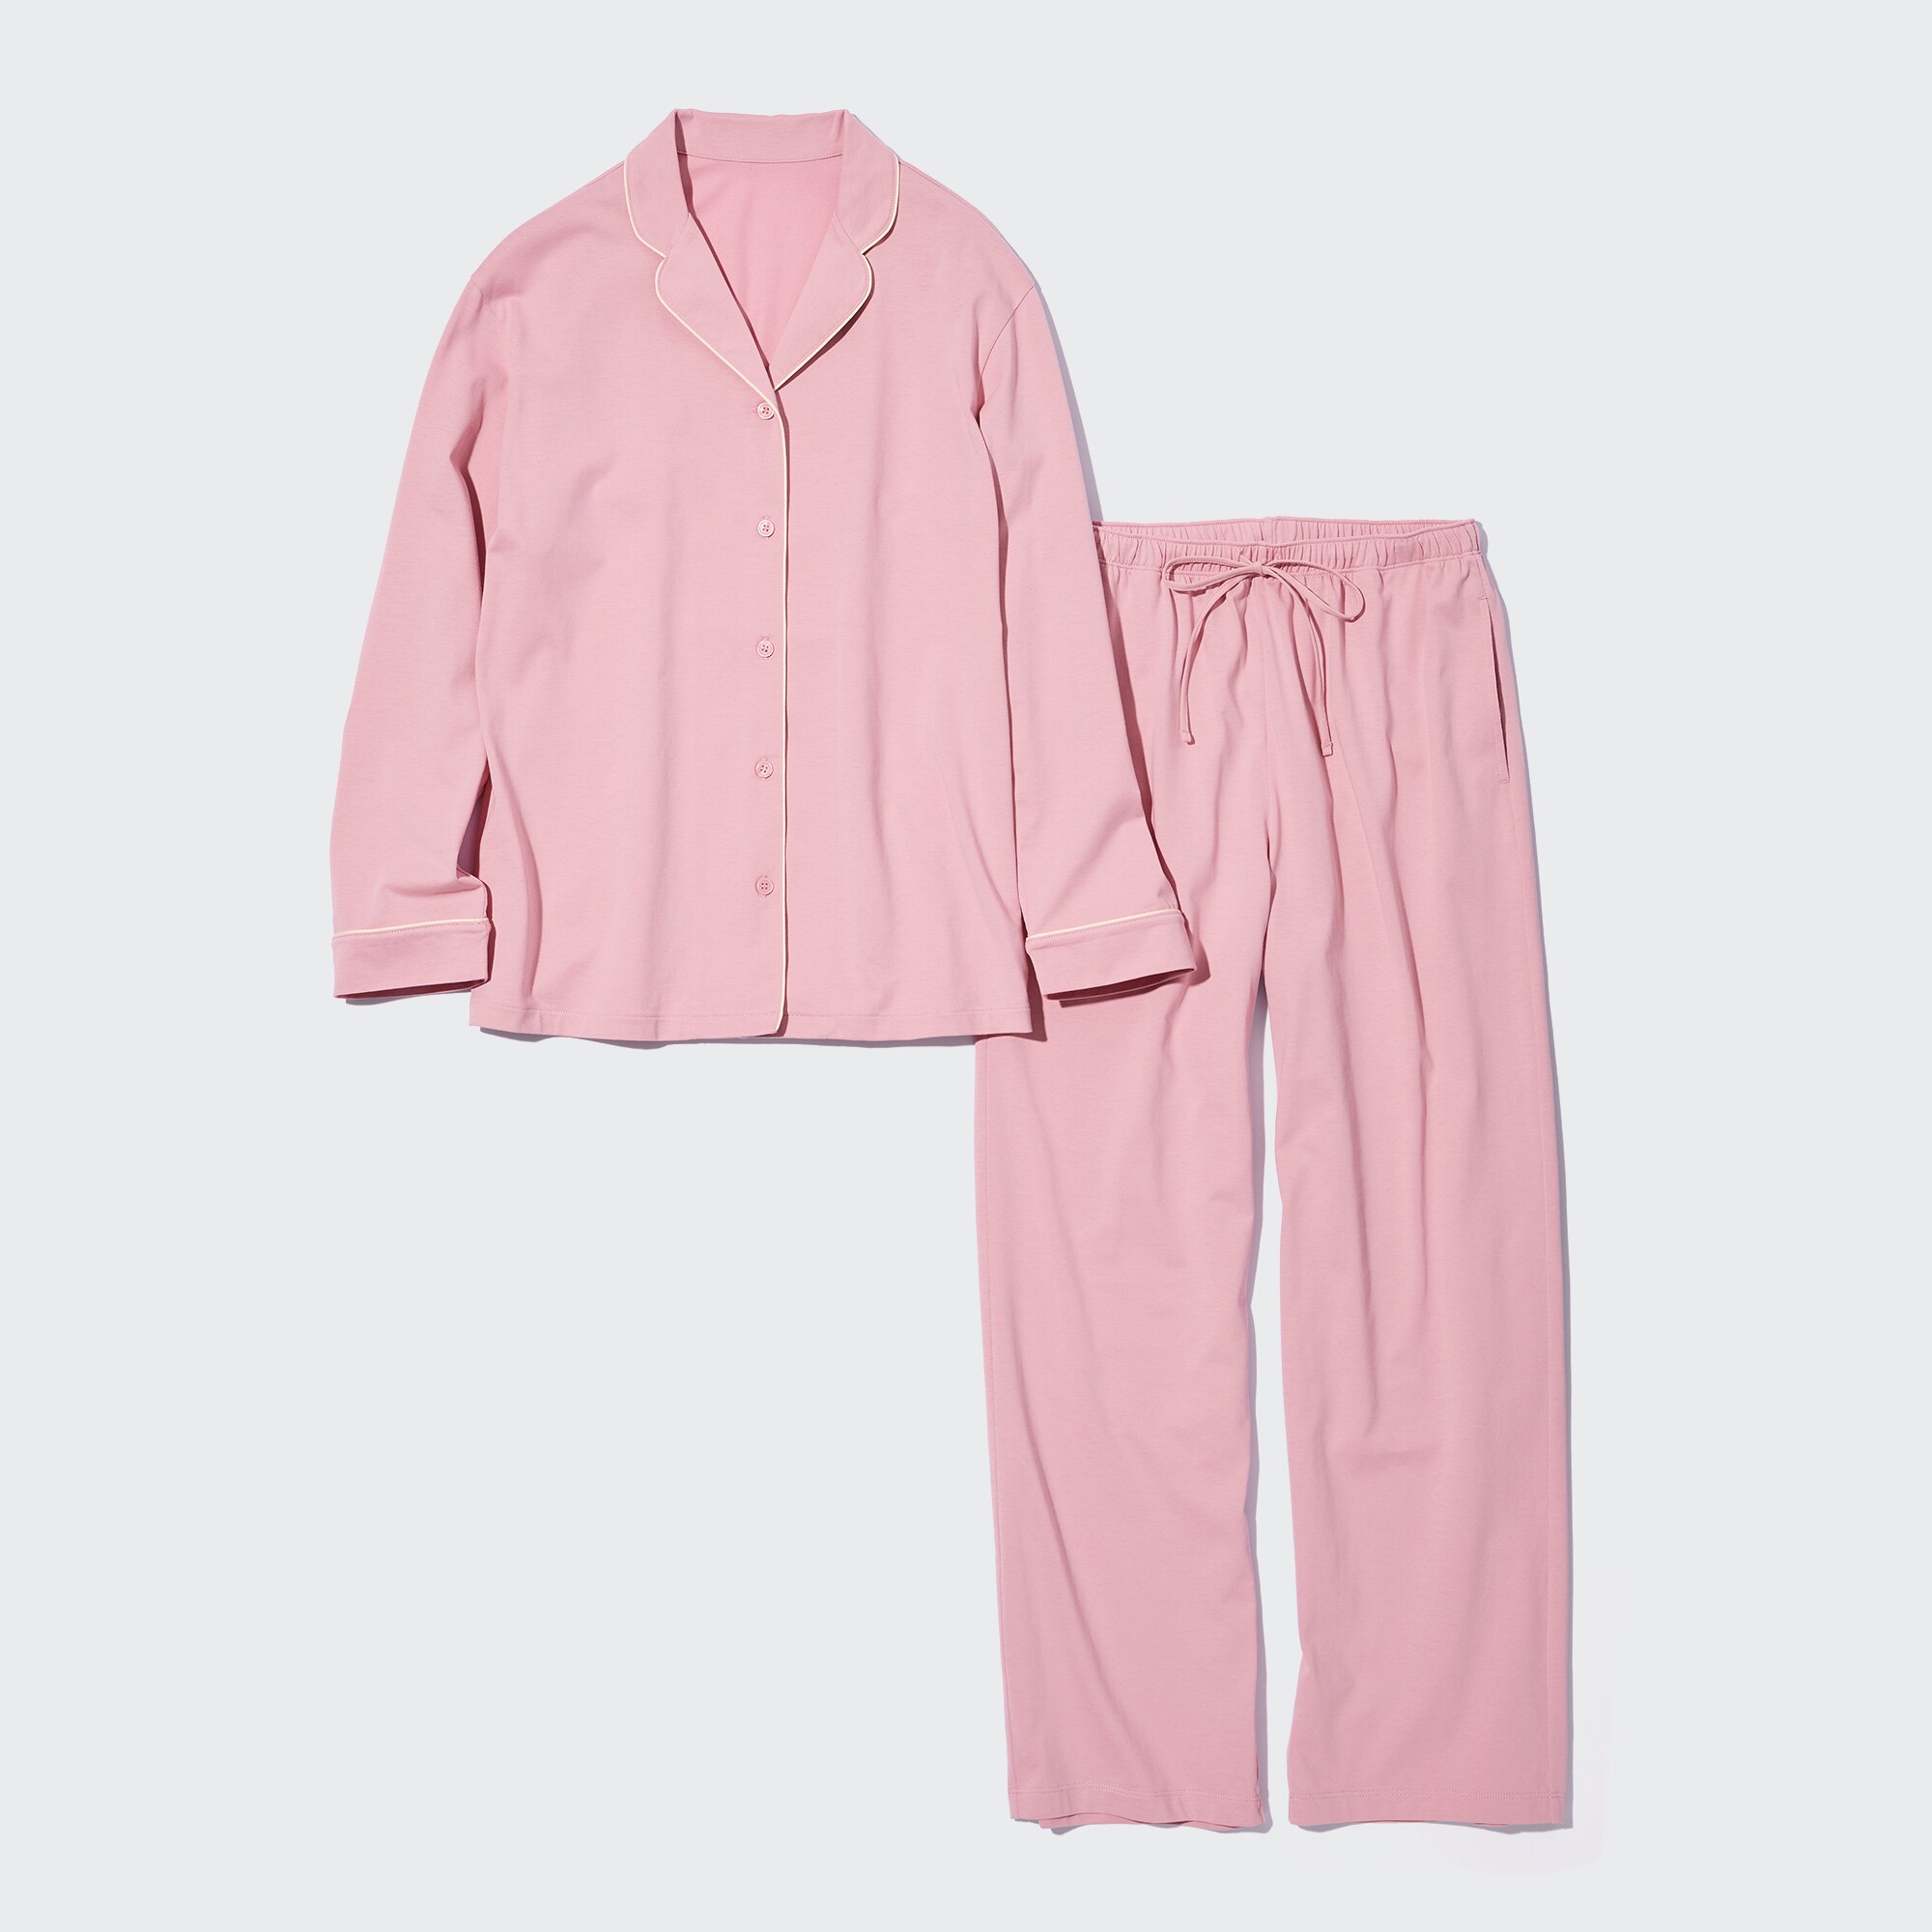 Viscosa Pijama Suave Elástico de Uniqlo de color Gris Mujer Ropa de Ropa para dormir de Pijamas 